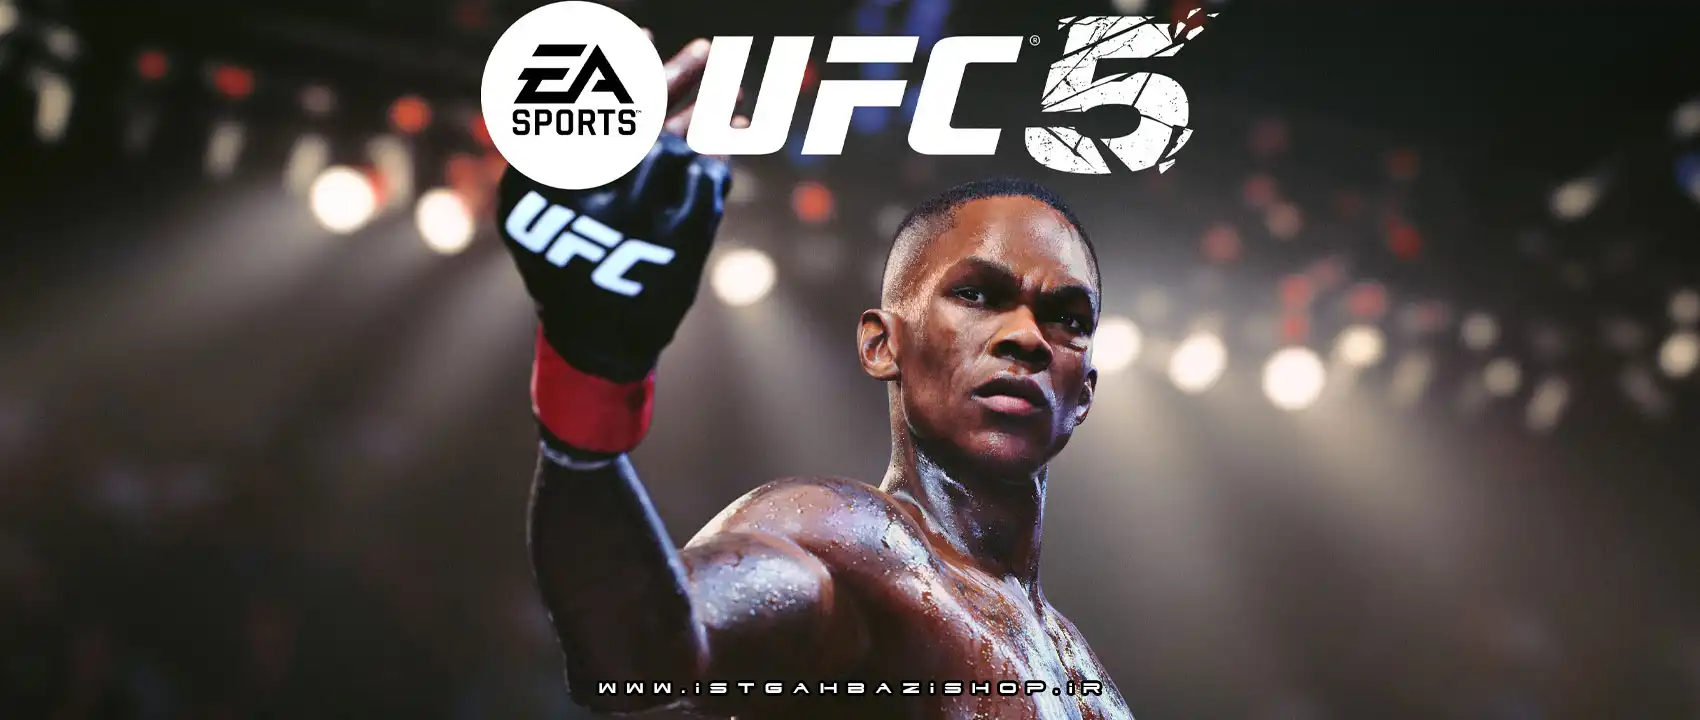 بازی UFC 5 برای PS5